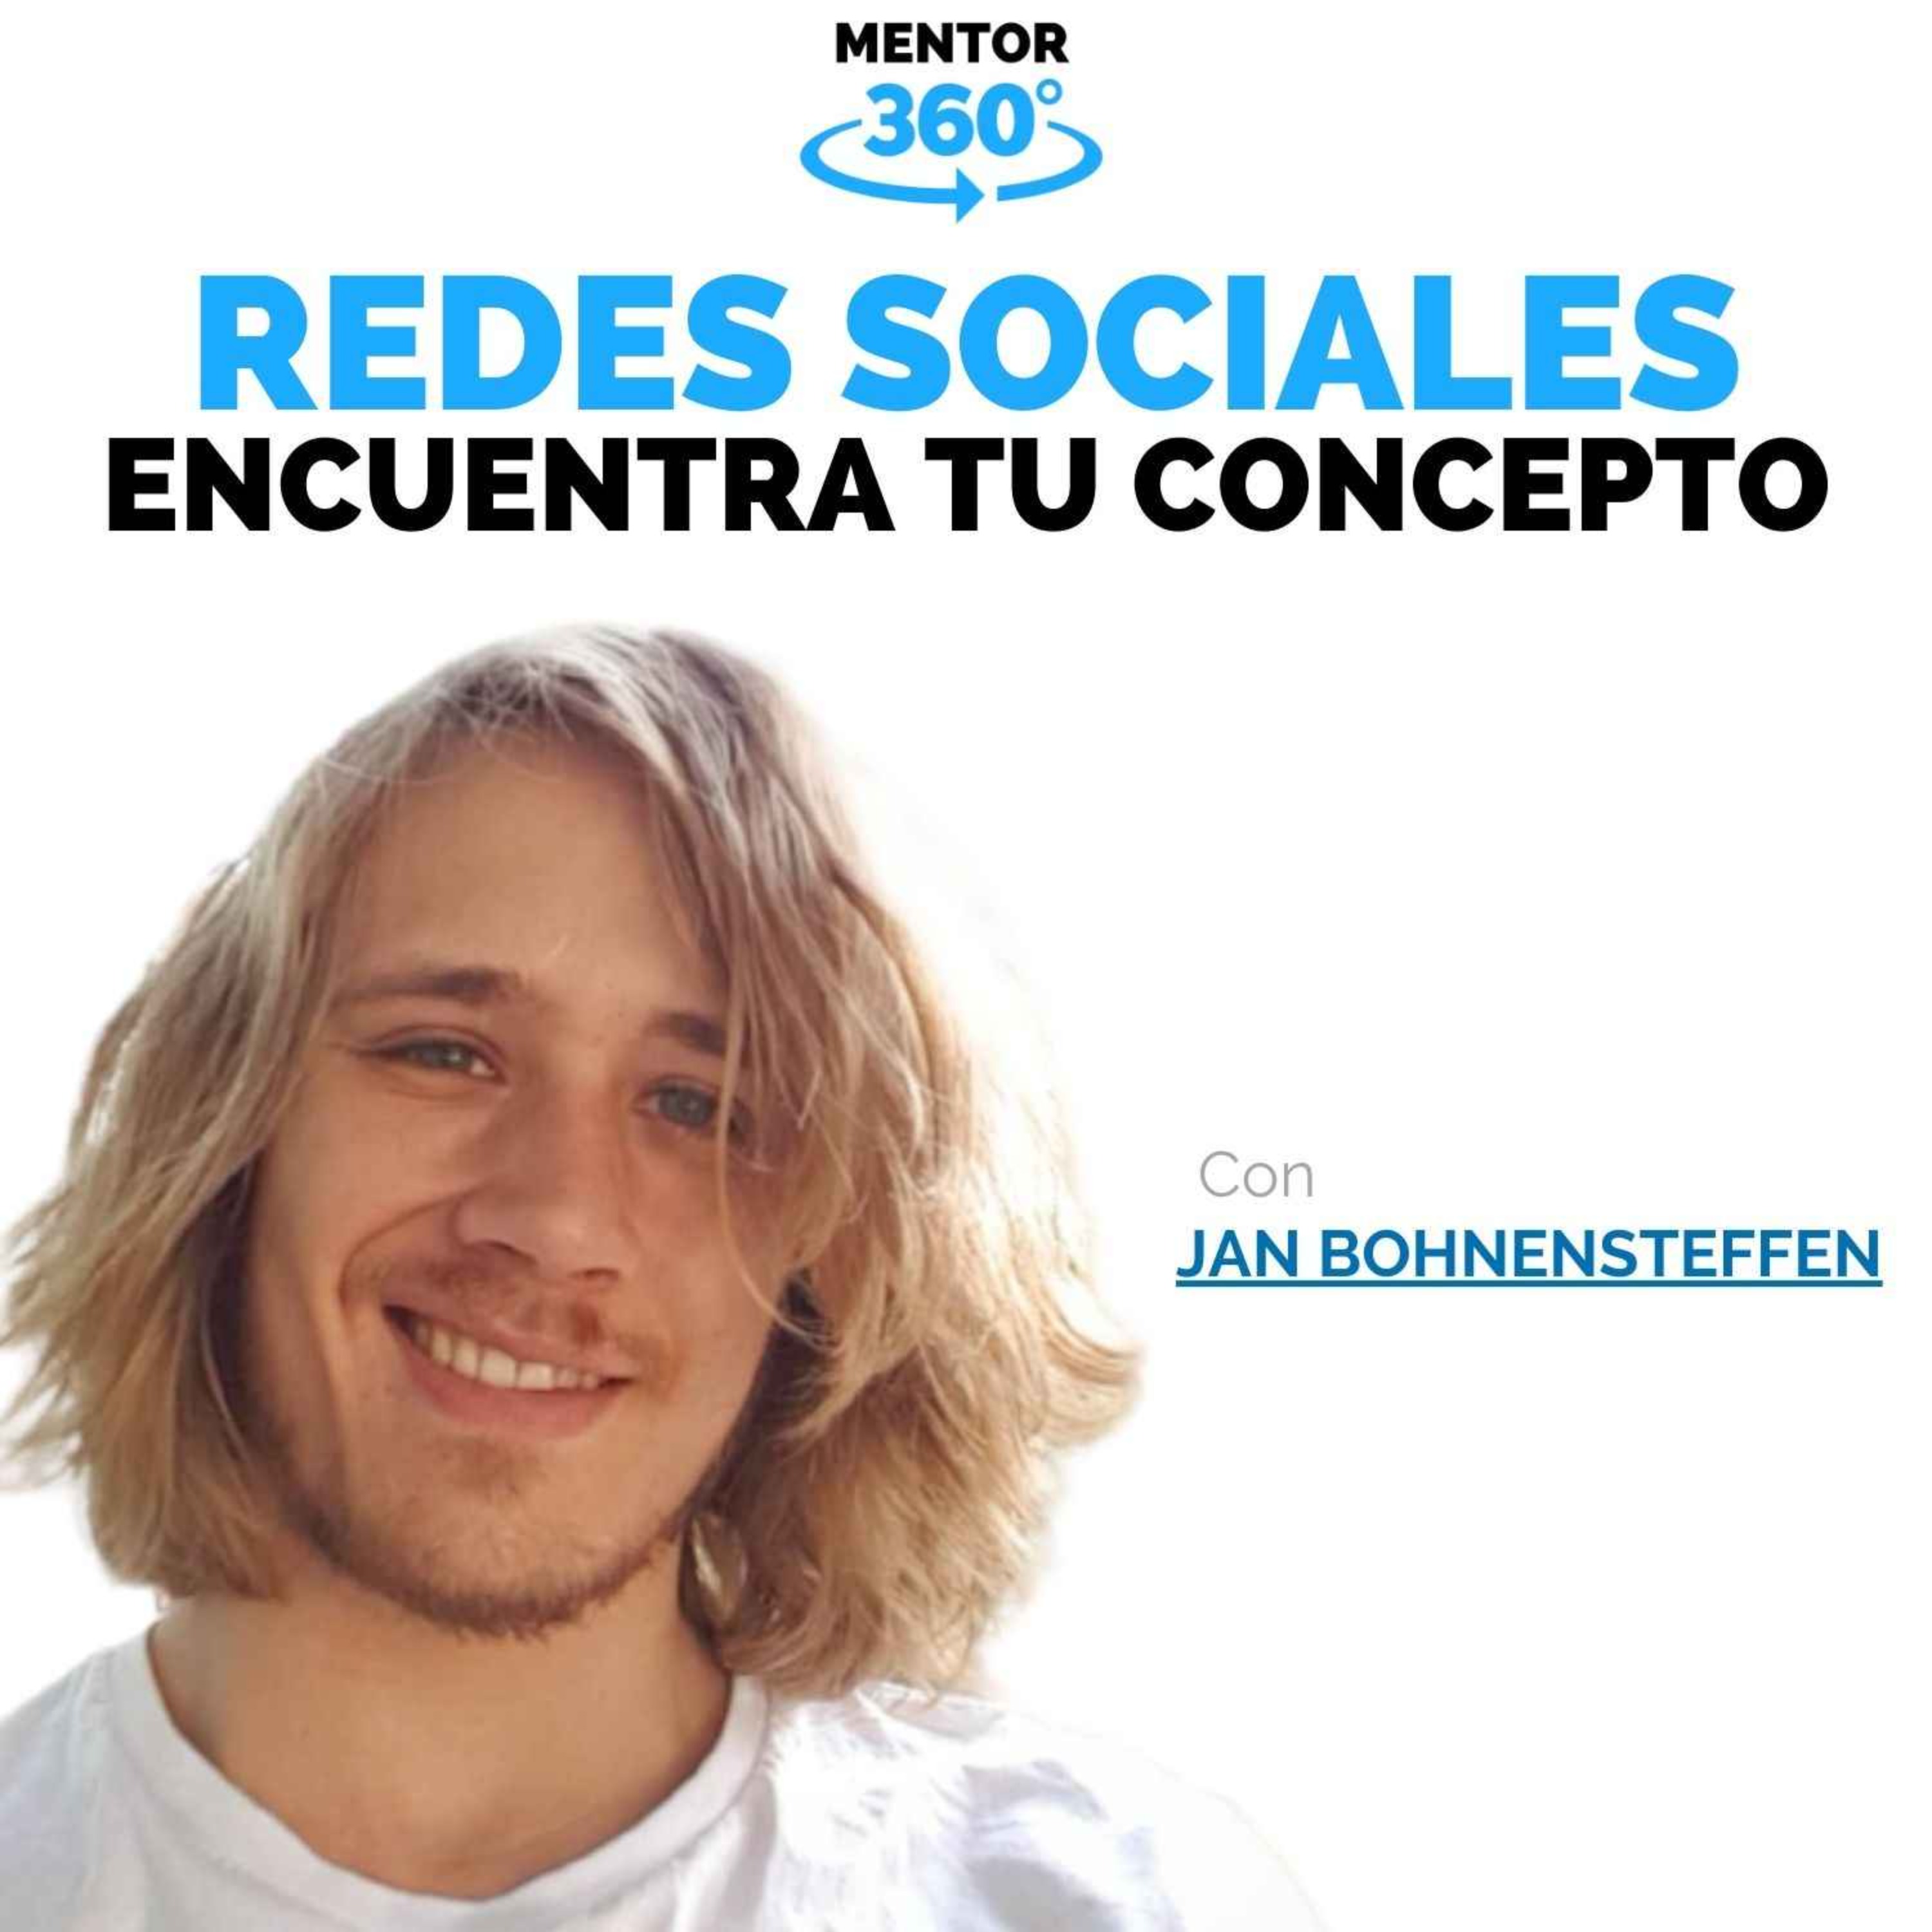 Cómo Encontrar Tu Concepto - Jan Bohnensteffen - Redes Sociales - MENTOR360